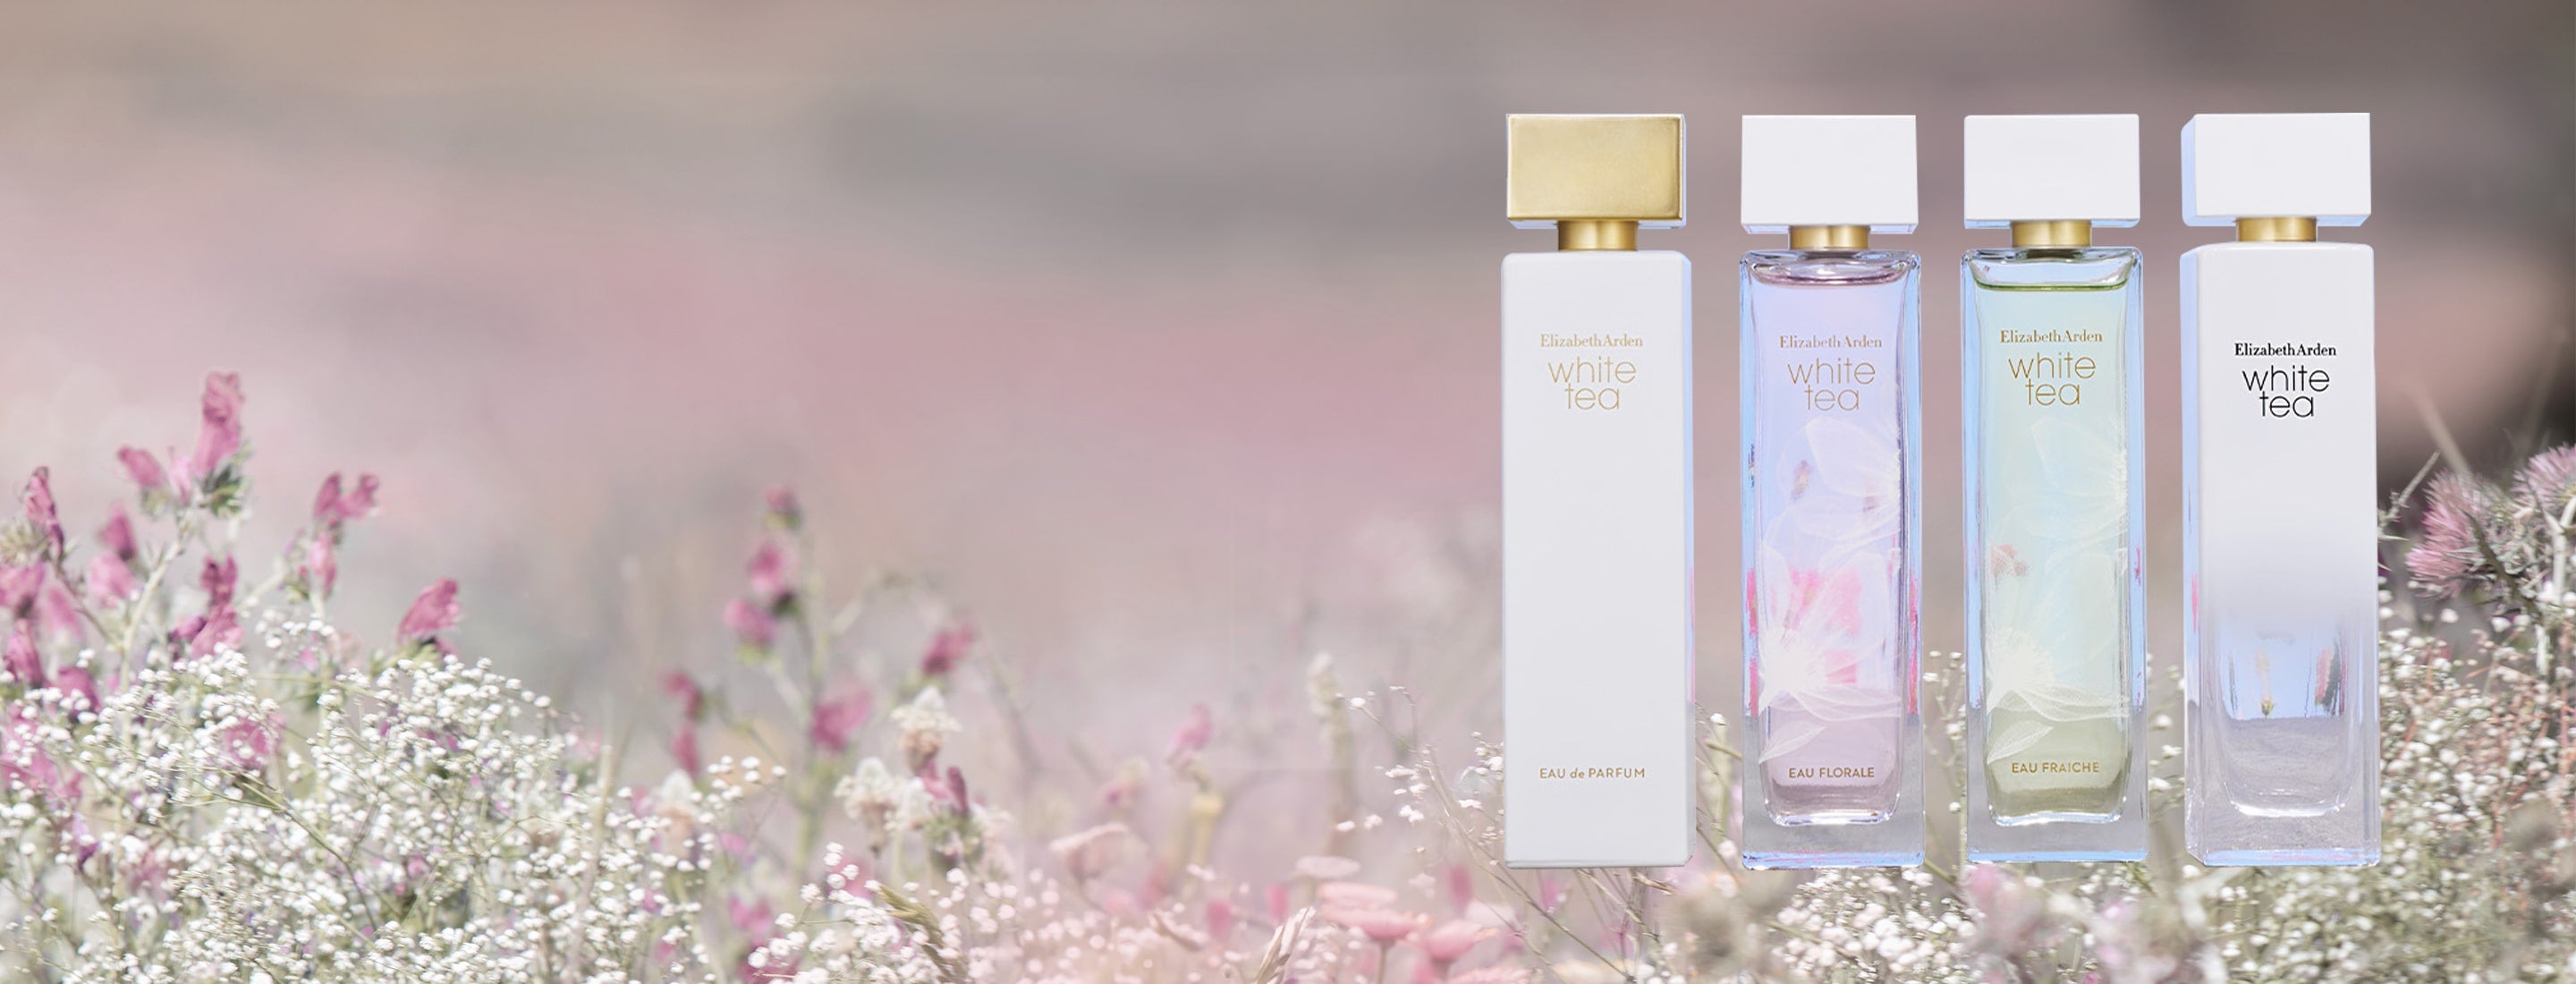 Perfumes and Bath & Body Care Fragrances | Elizabeth Arden